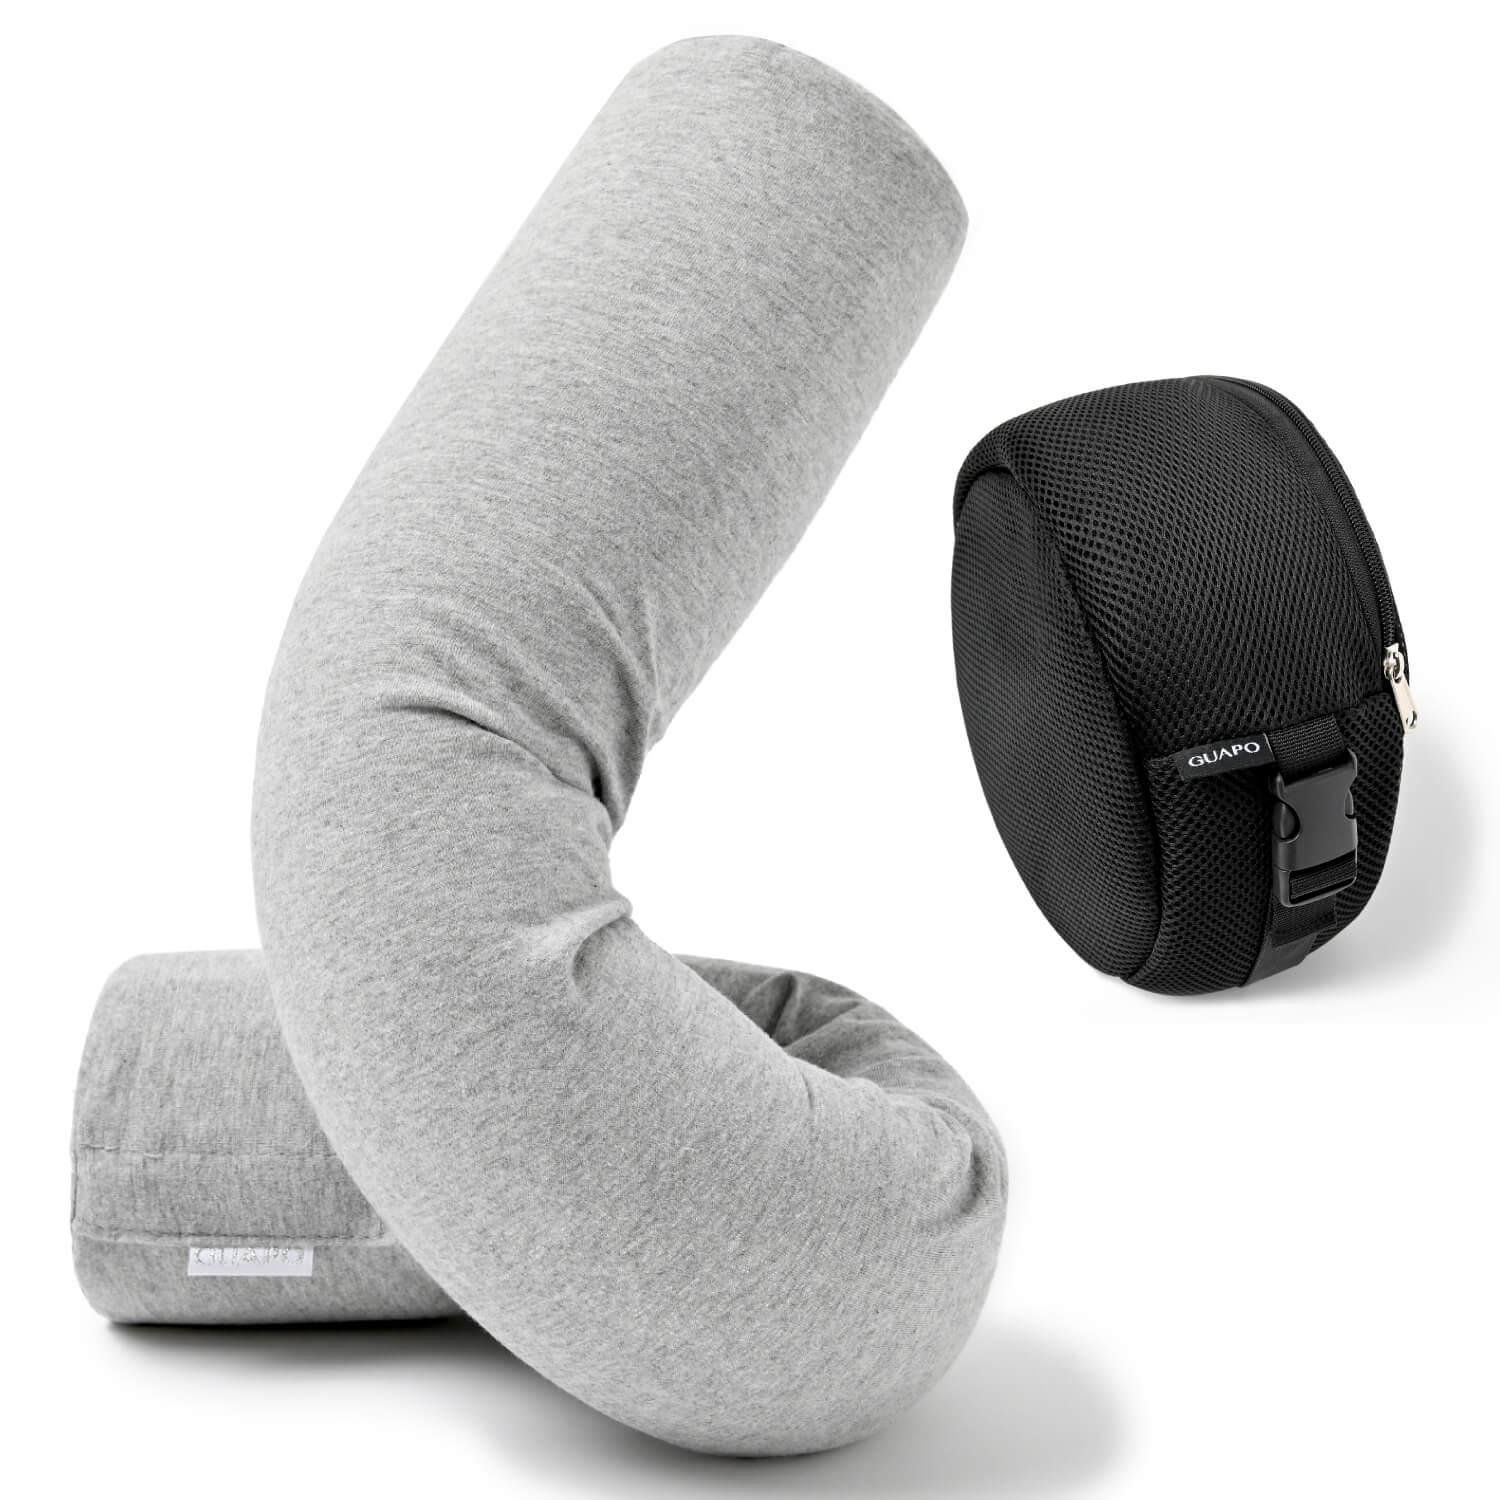 ネックピロー グッドデザイン賞 GUAPO 好きな形に曲げられるネックピロー 低反発 旅行枕 携帯枕...